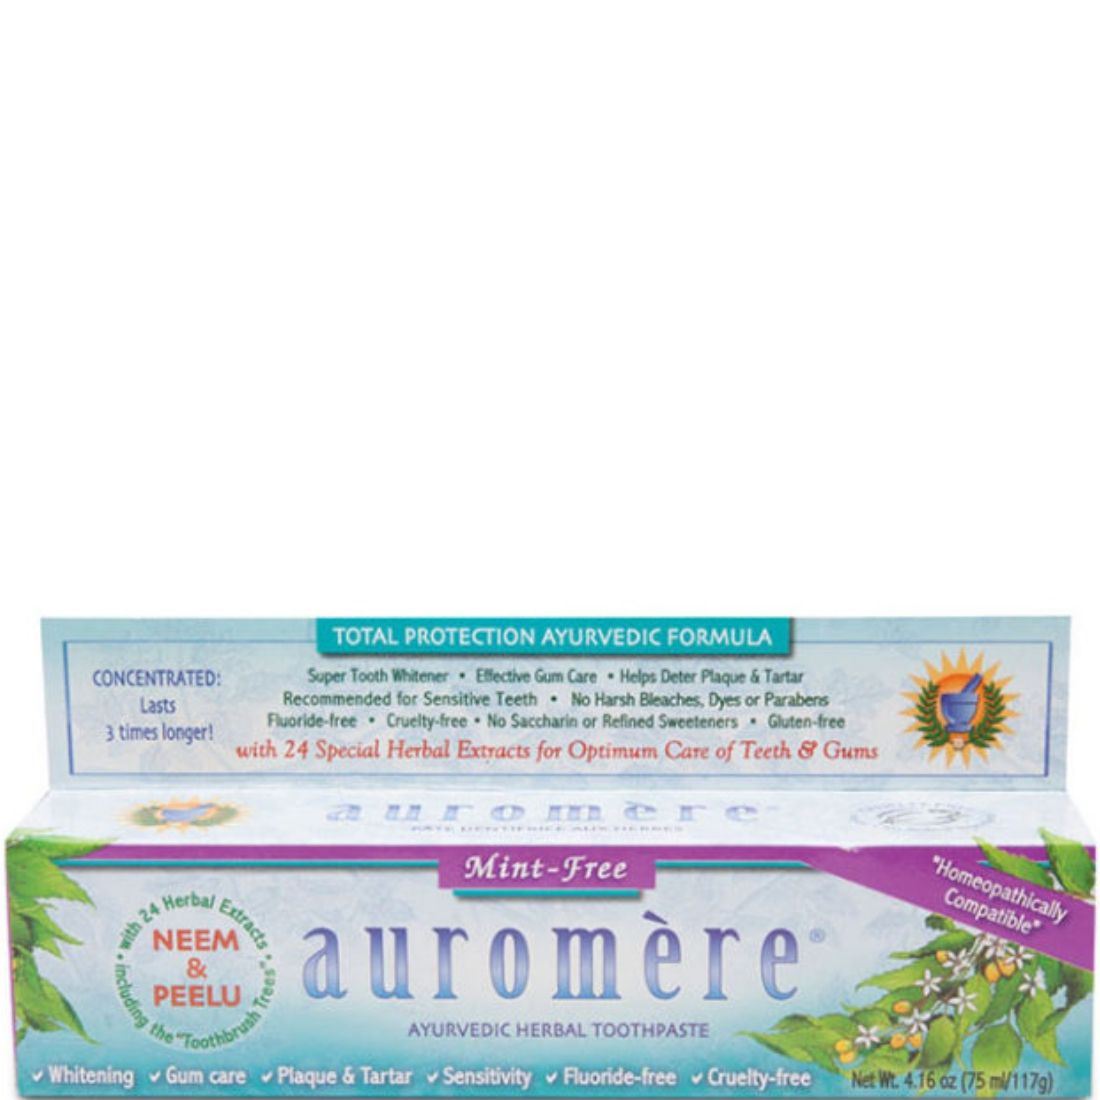 Auromere Ayurvedic Toothpaste, 75ml